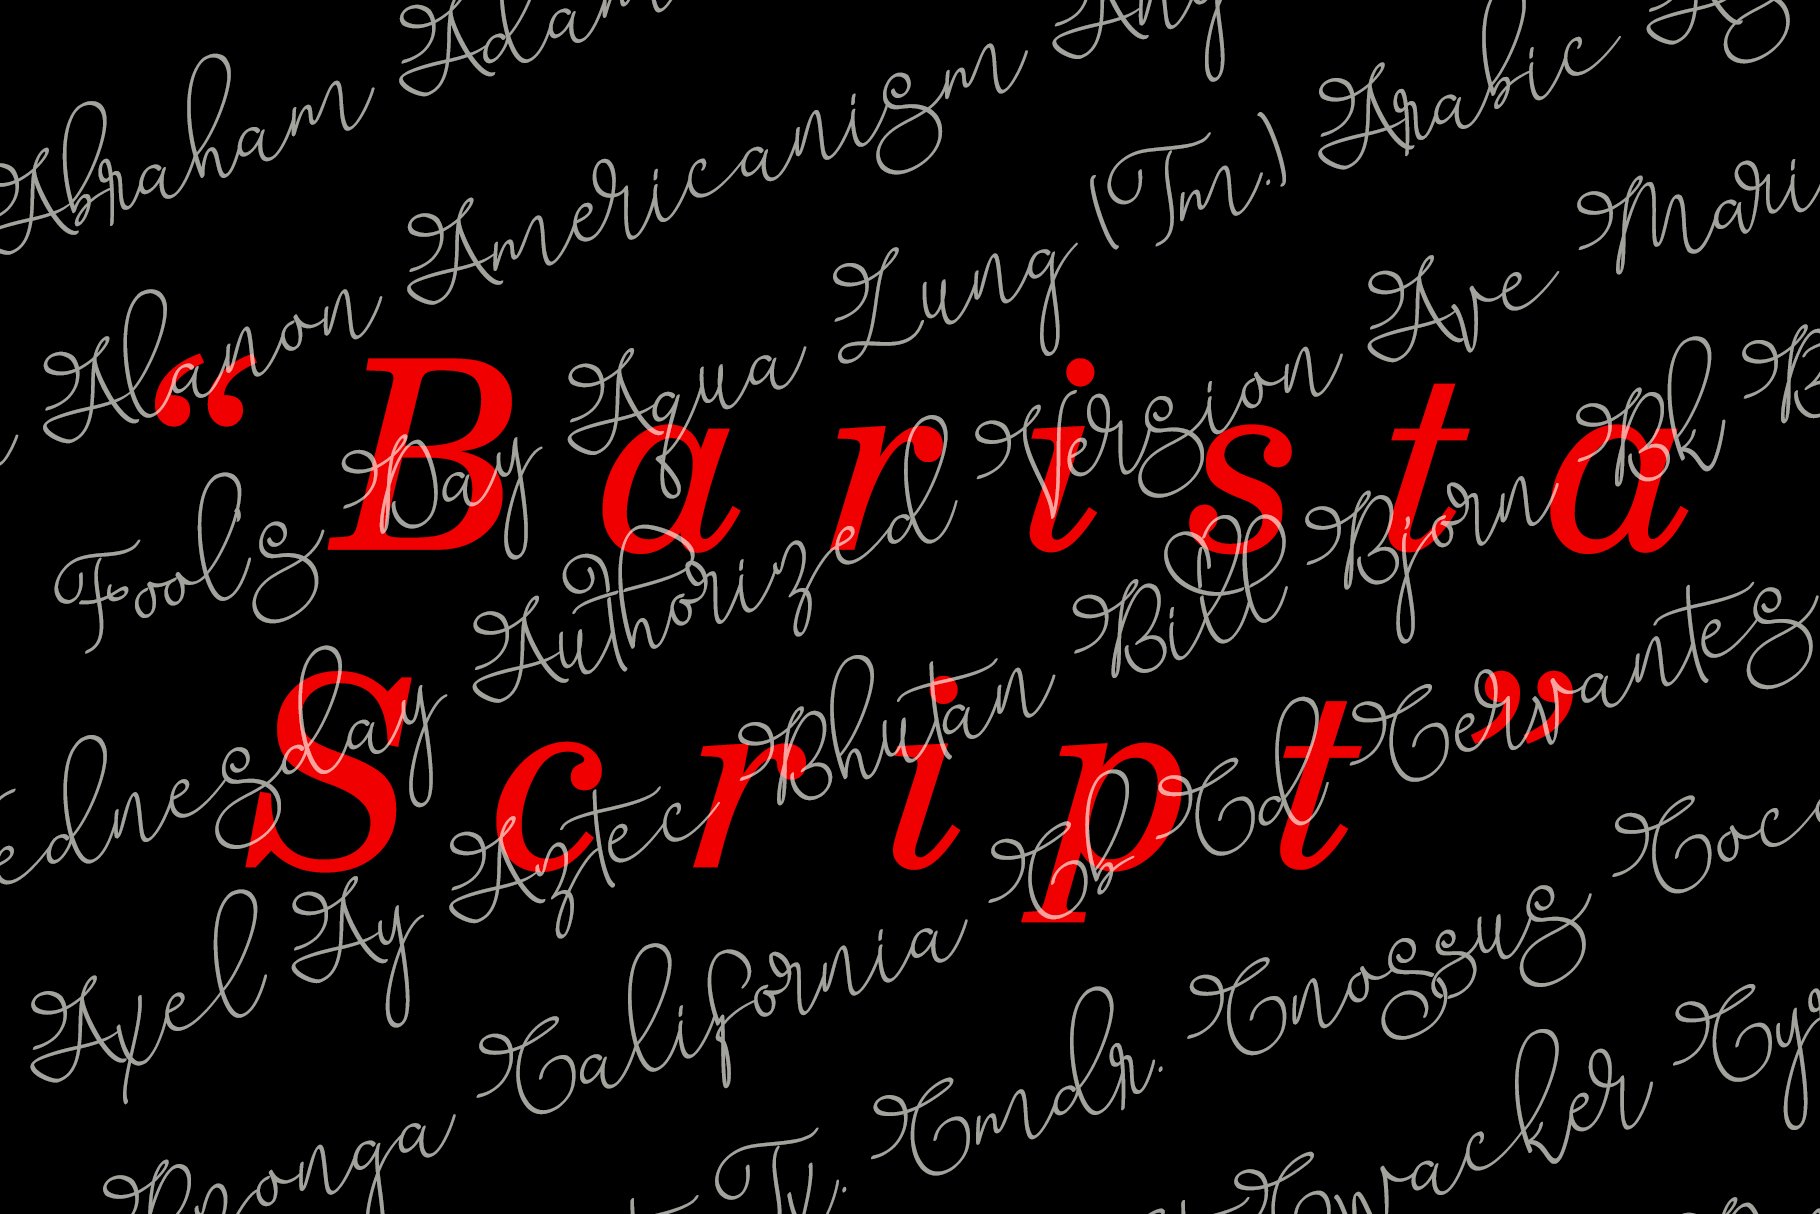 barista script preview 006 812